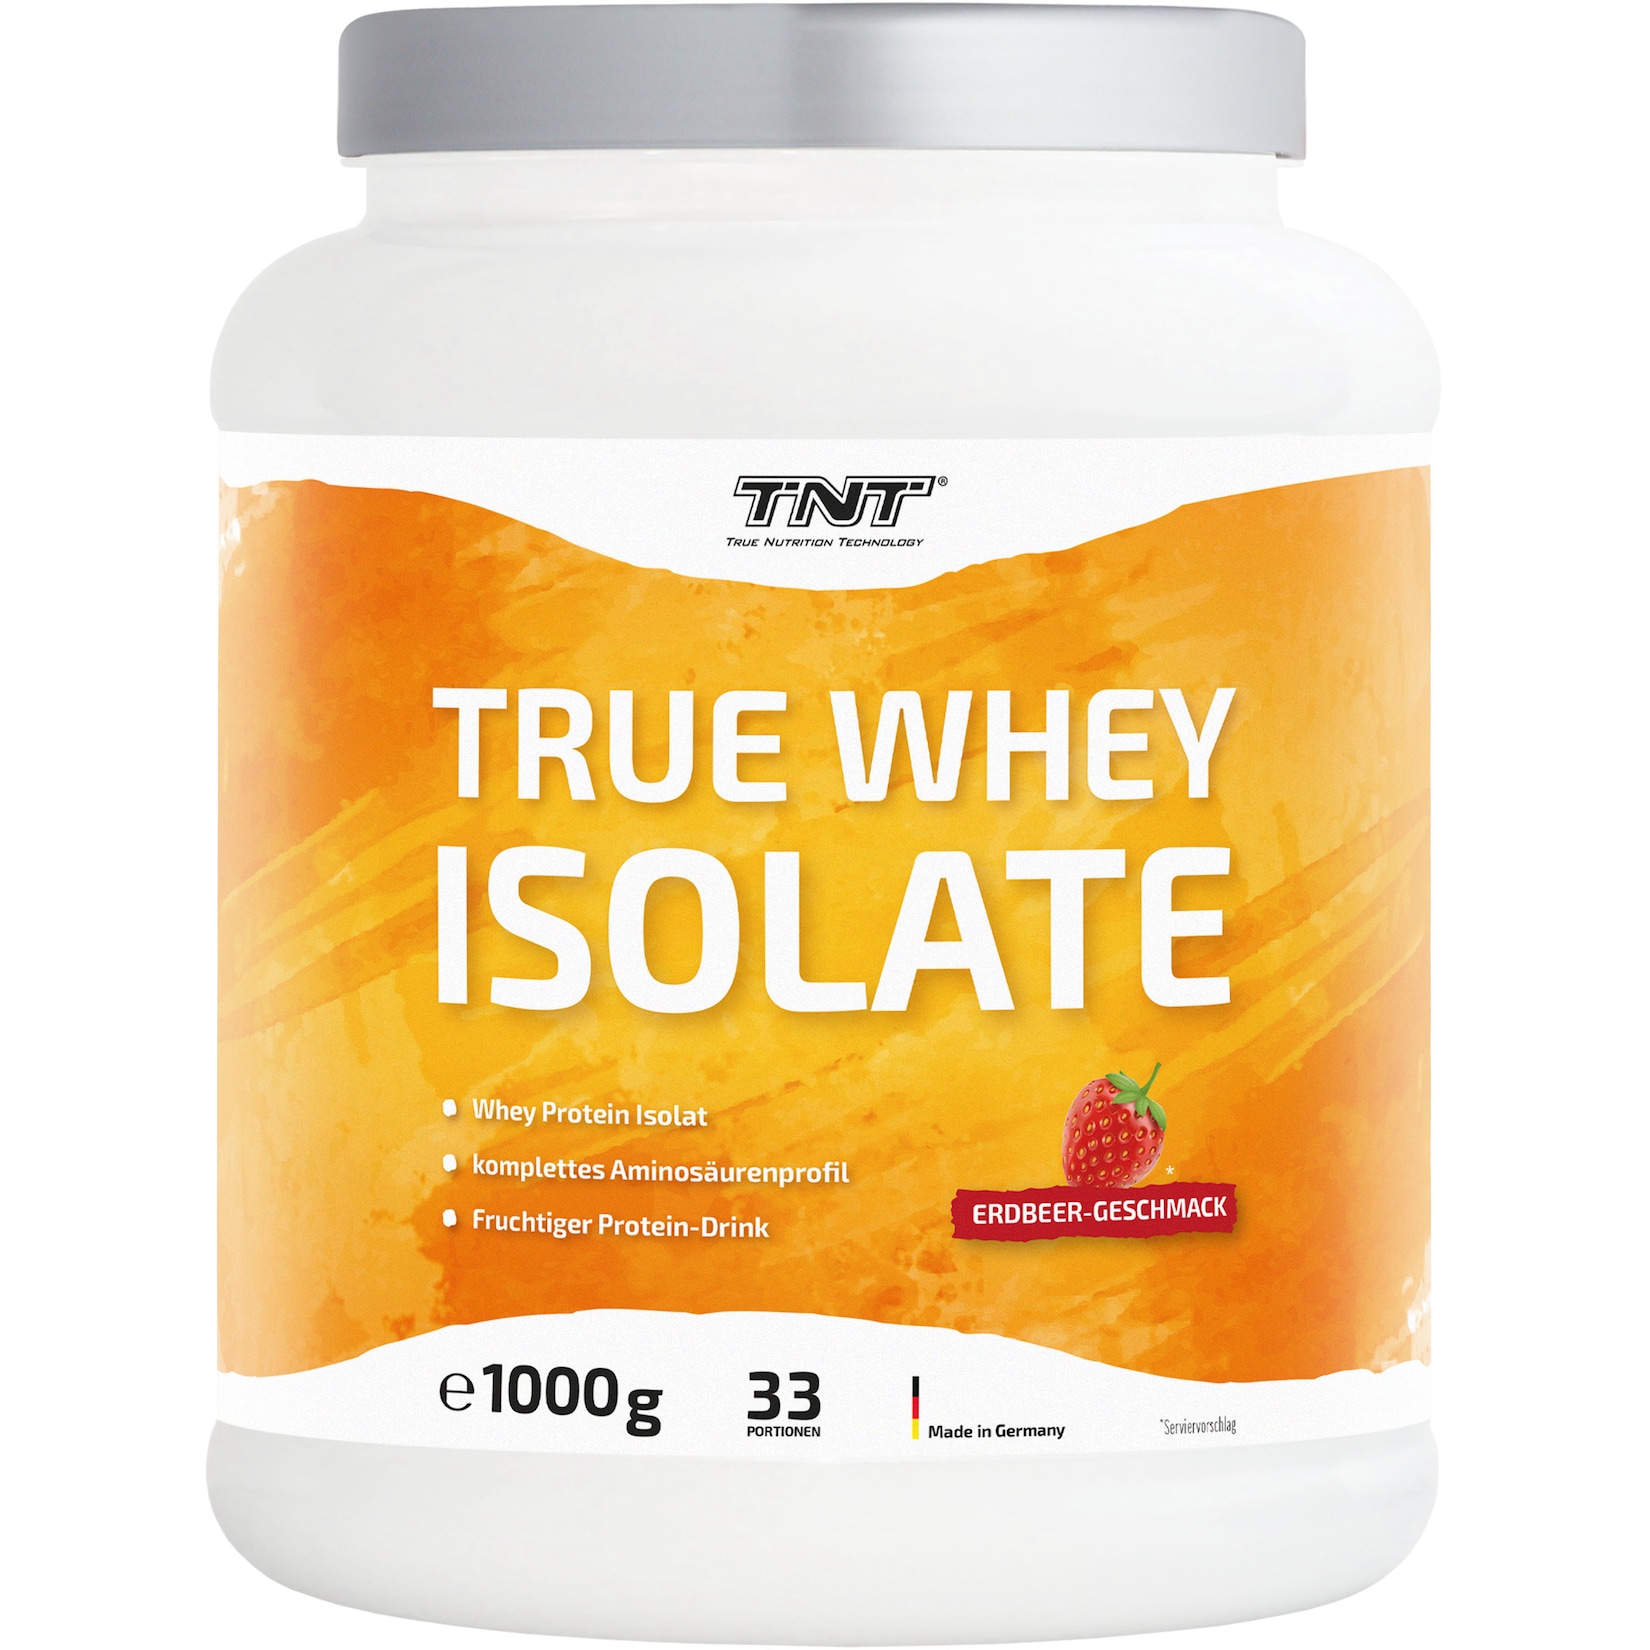 TNT True Whey Isolate extrem hoher Eiweißanteil, kaum milchiger Geschmack, lecker